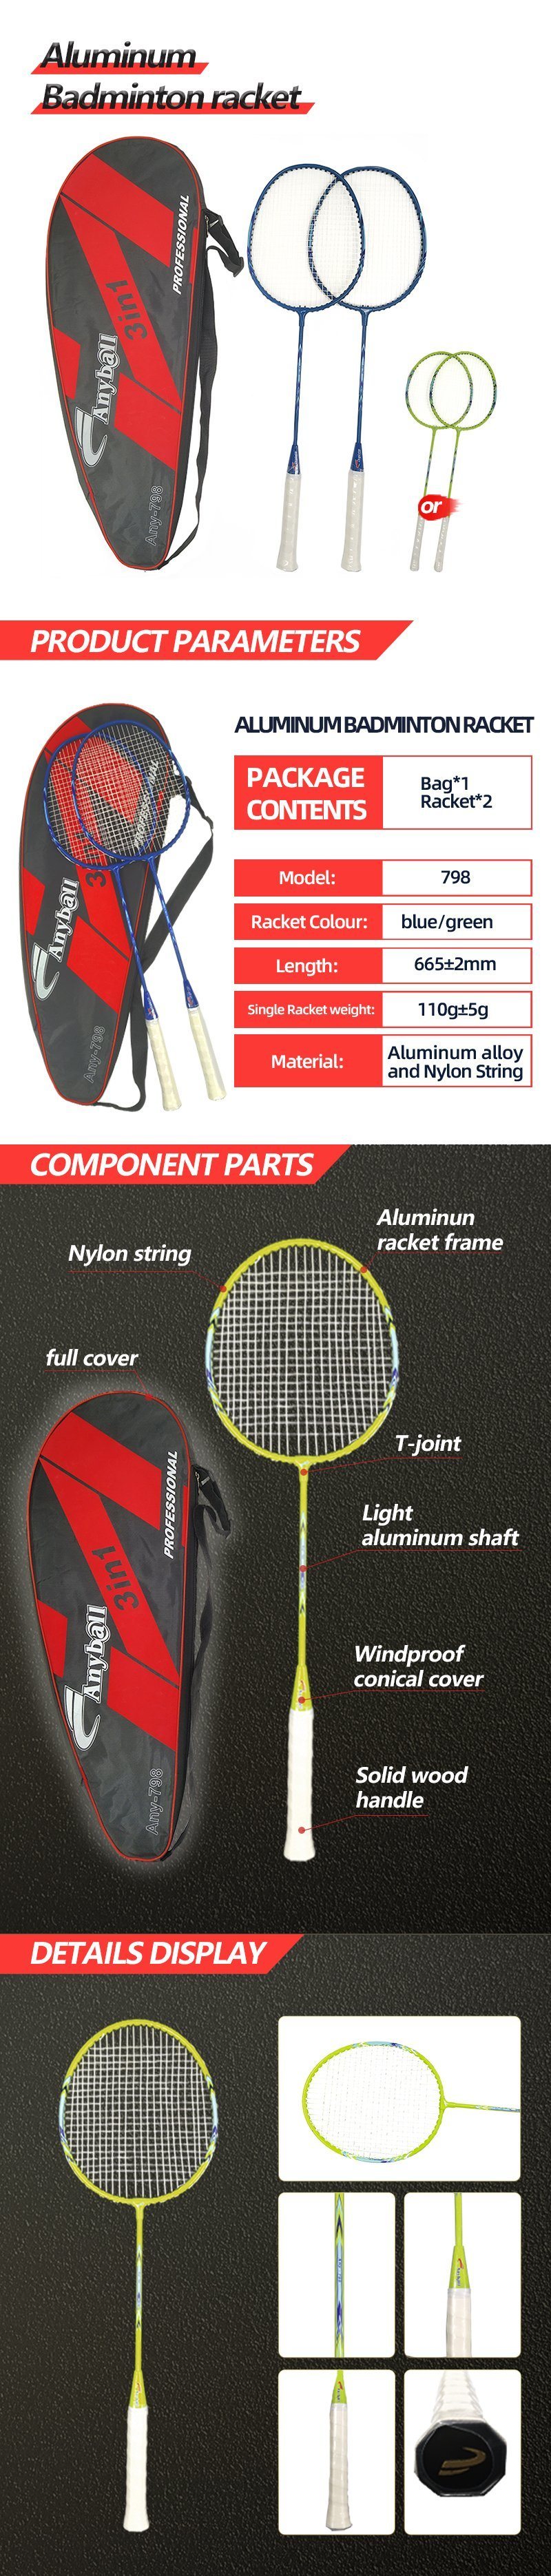 Light Aluminum Shuttlecock Racquet One Racket Grip Badminton Pair Racket